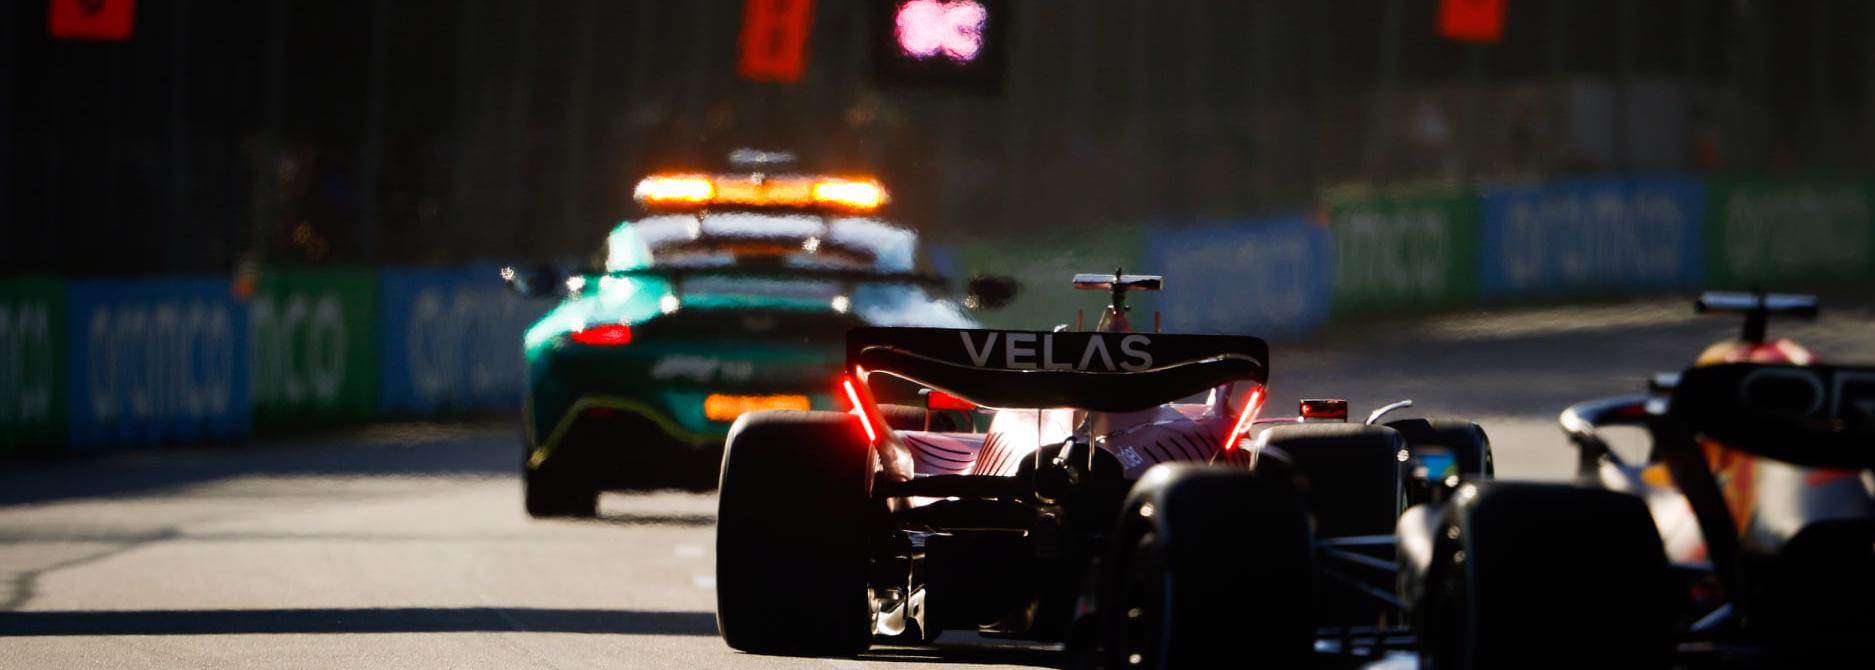 Max Verstappen chê xe an toàn “rùa”, FIA phải lên tiếng